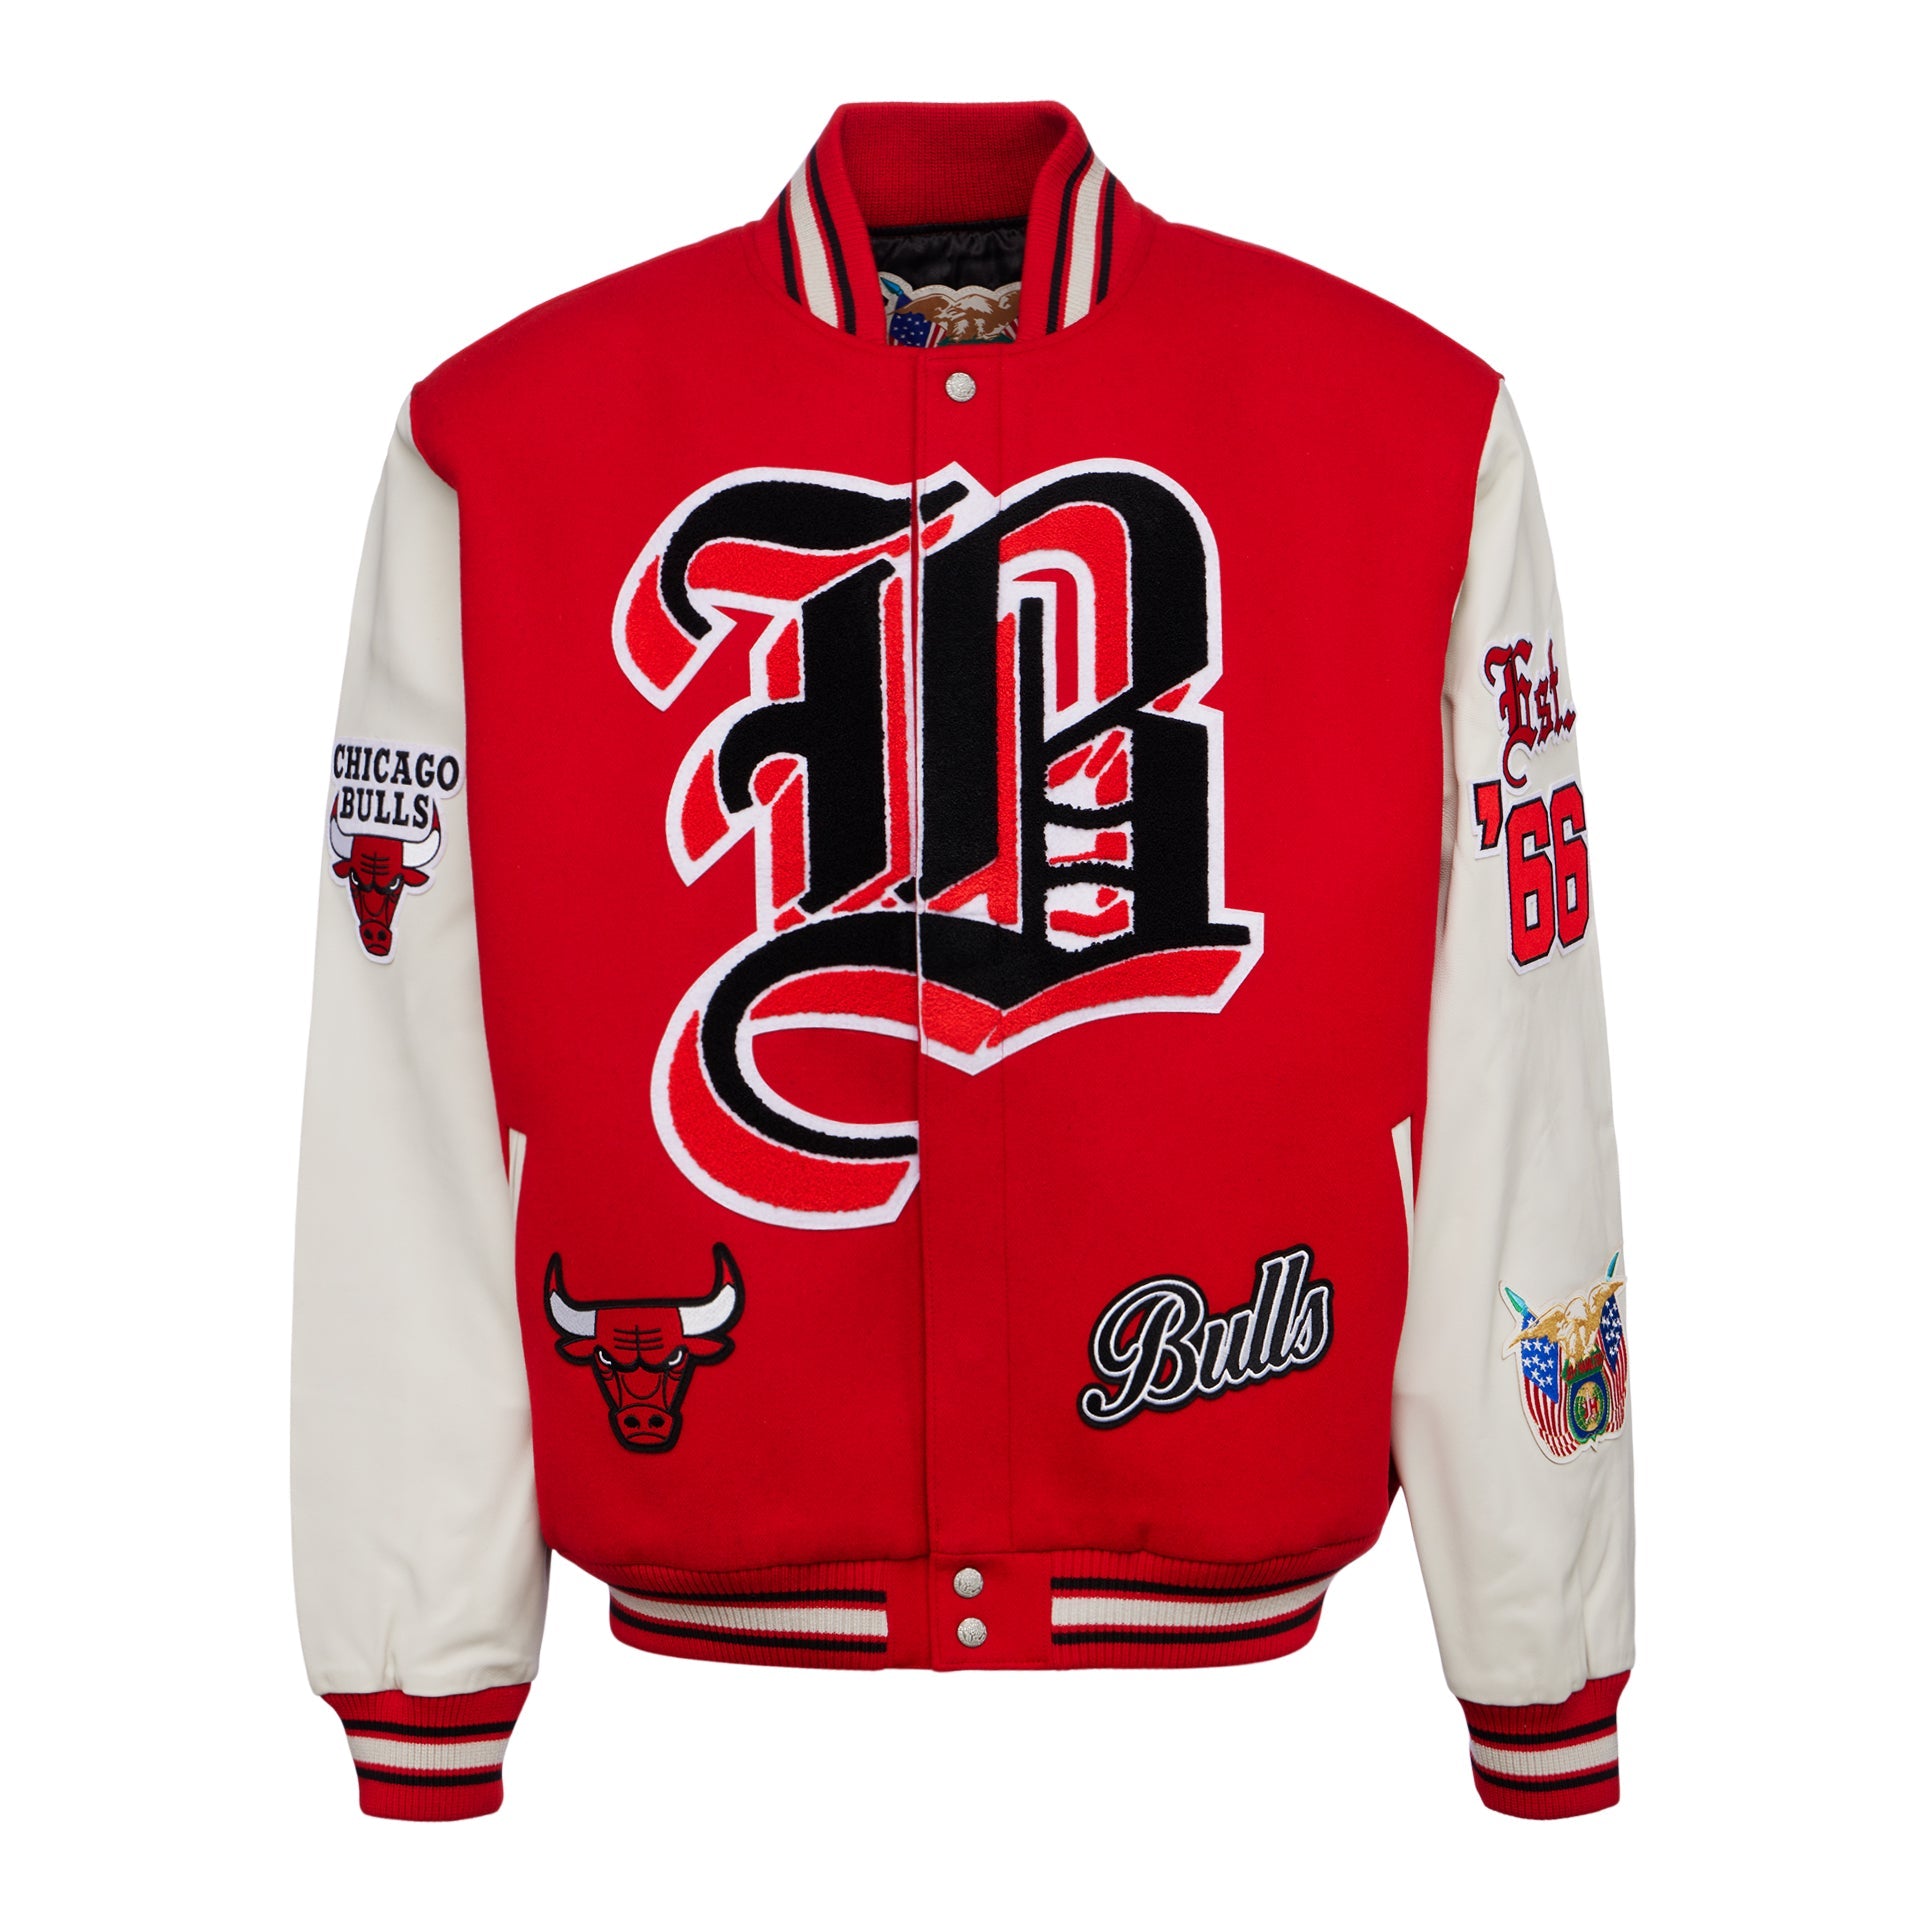 Chicago Bulls Red & Black Letterman Varsity Jacket